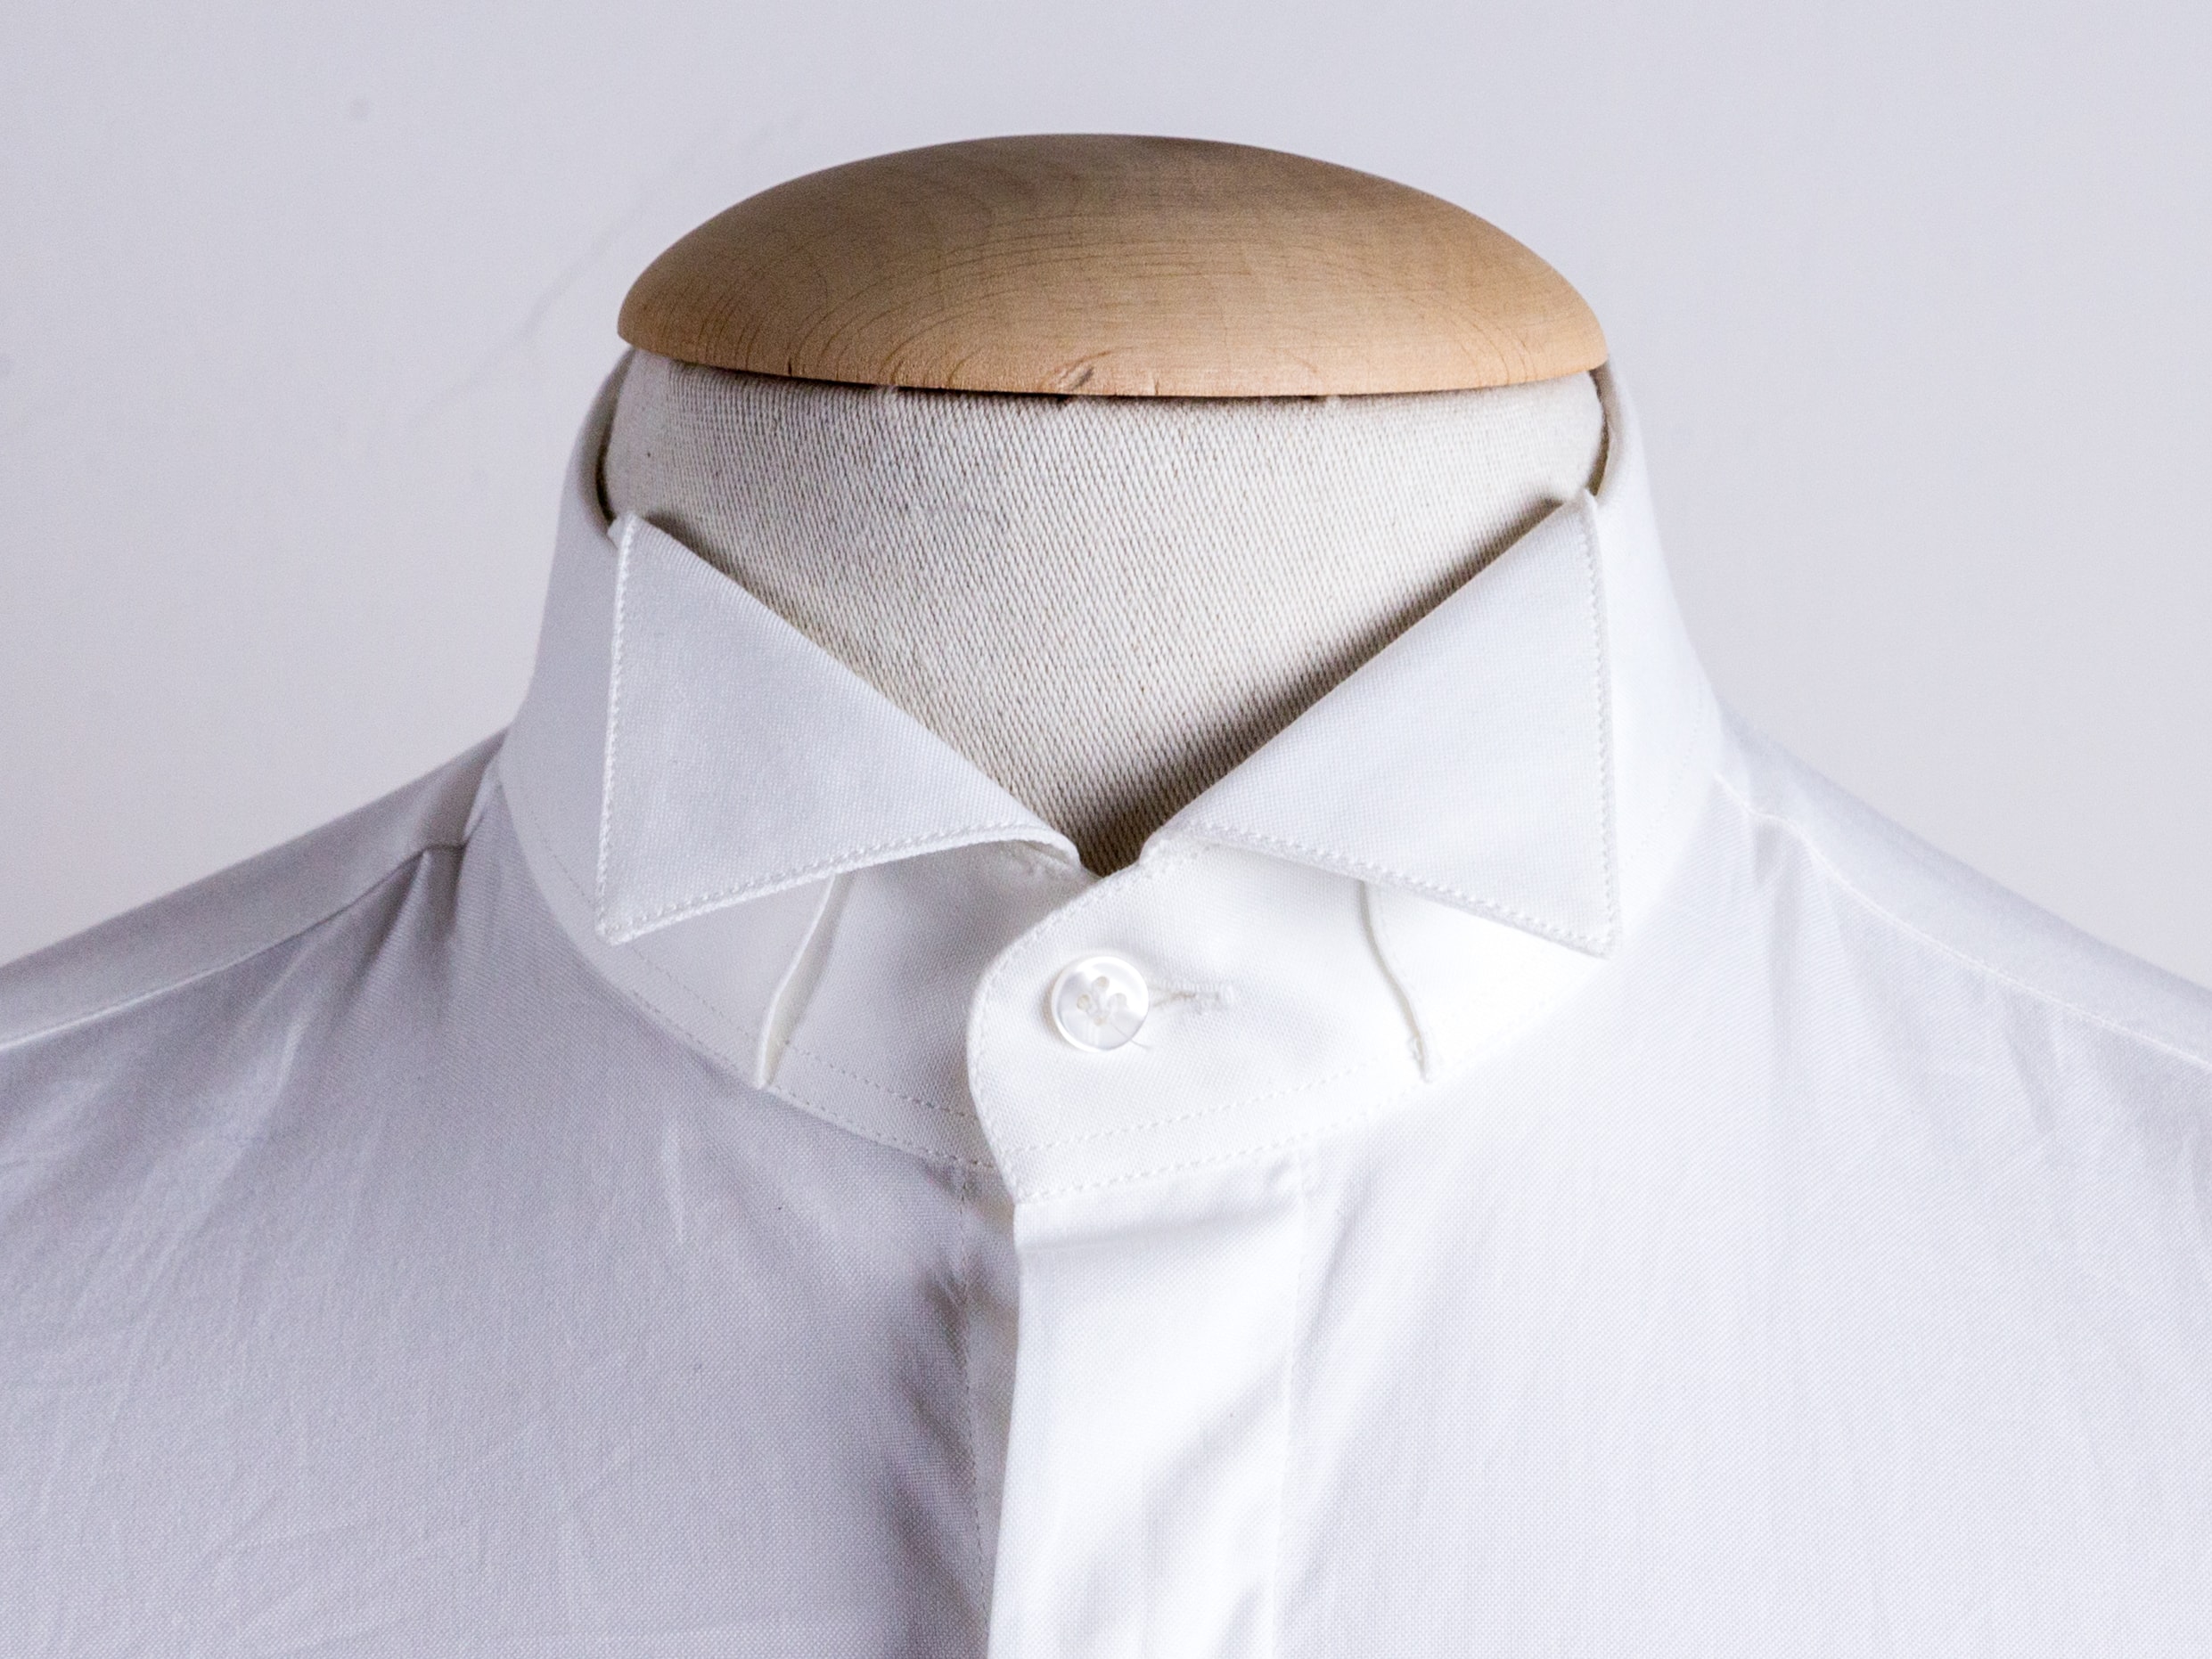 Wingtip collar shirt